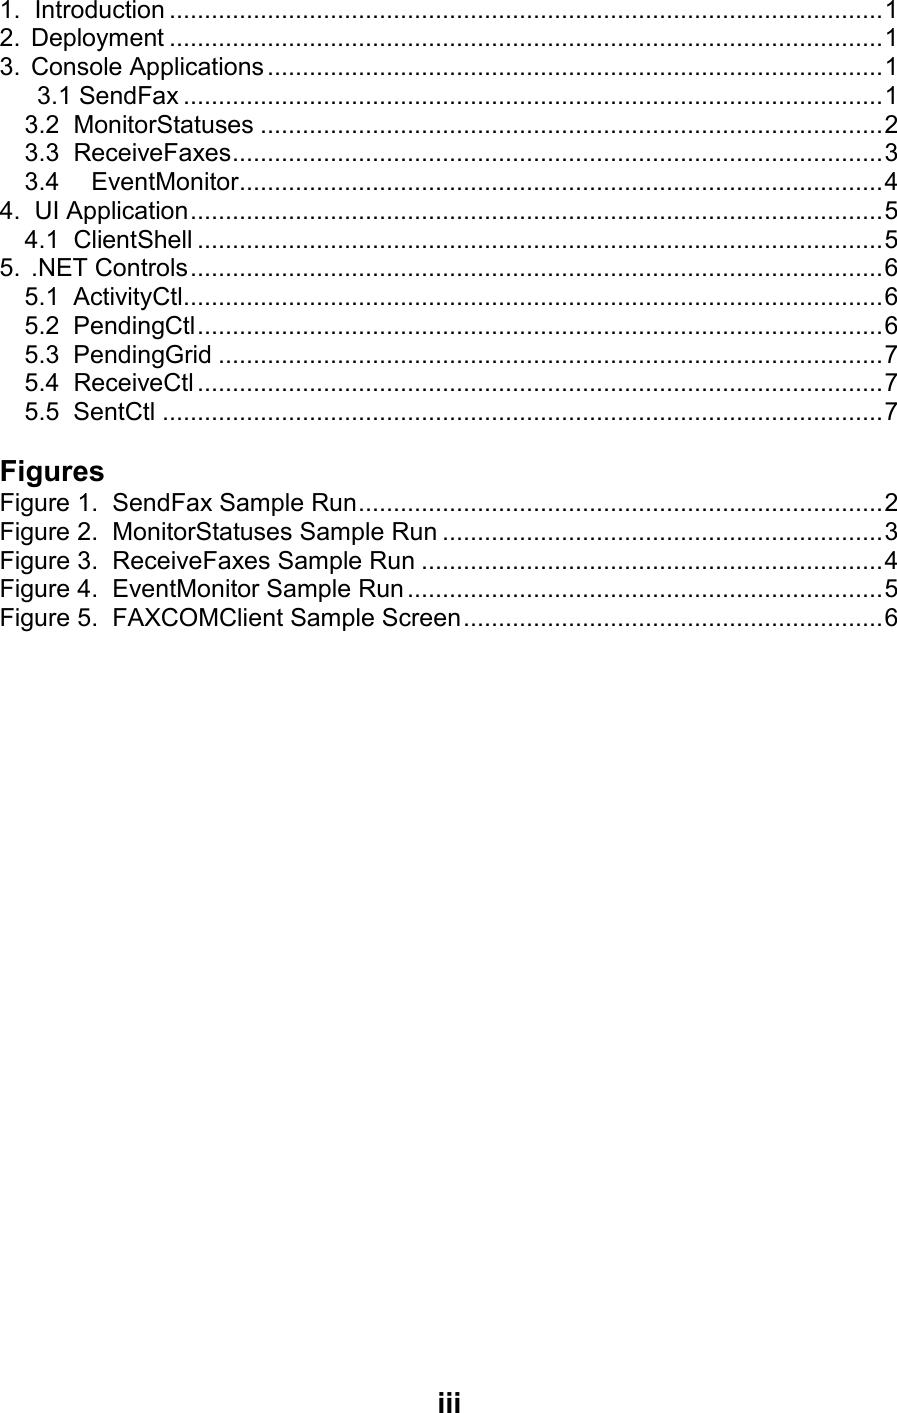 Page 3 of 10 - FAXCOM FAXCOMLib Samples Guide